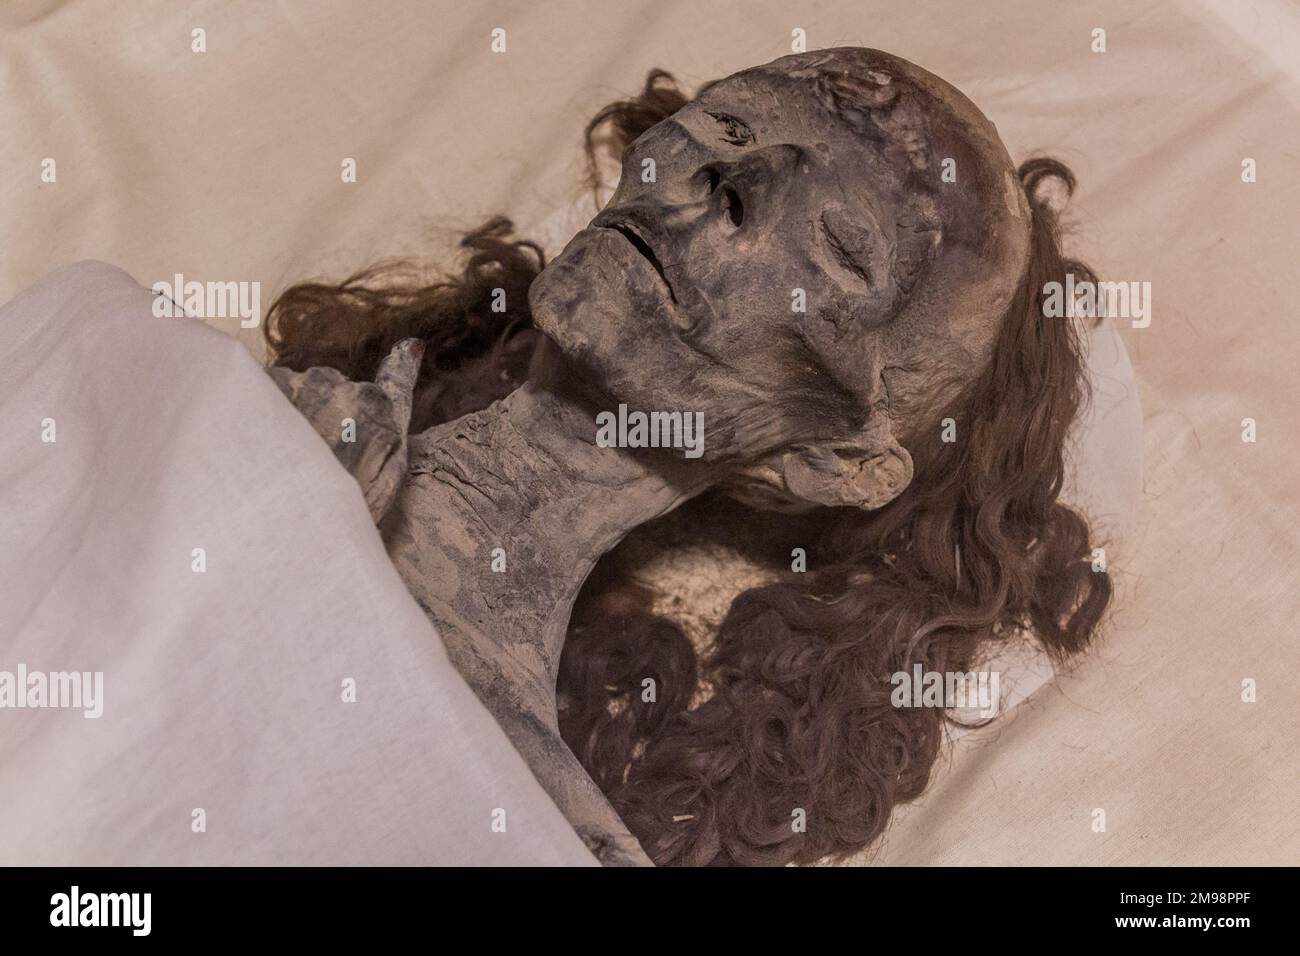 KAIRO, ÄGYPTEN - 27. JANUAR 2019: Königin Tiye im Ägyptischen Museum in Kairo, Ägypten Stockfoto